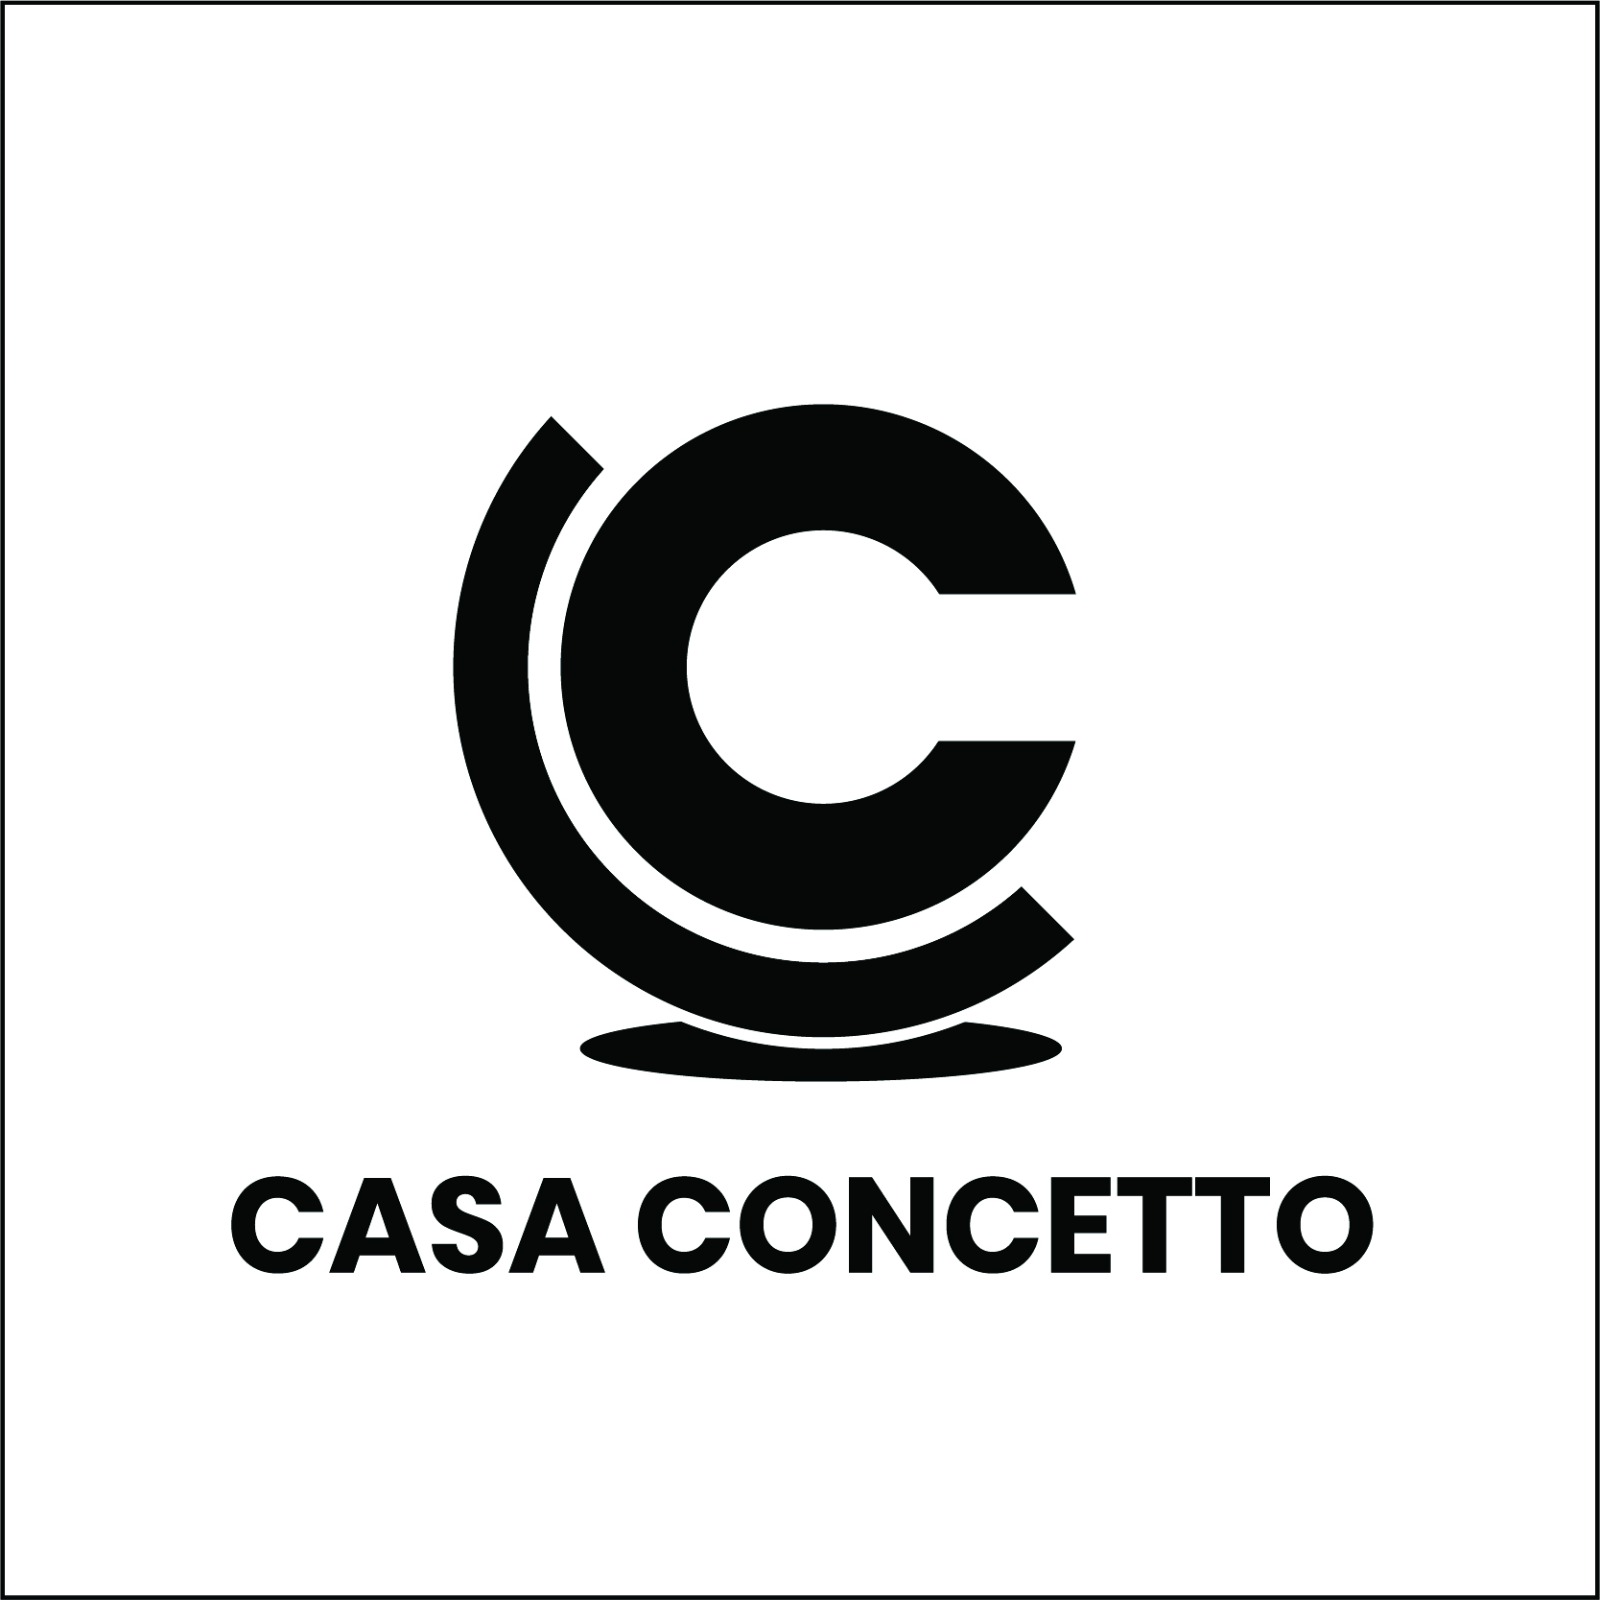 Company logo for Casa Concetto Pte. Ltd.